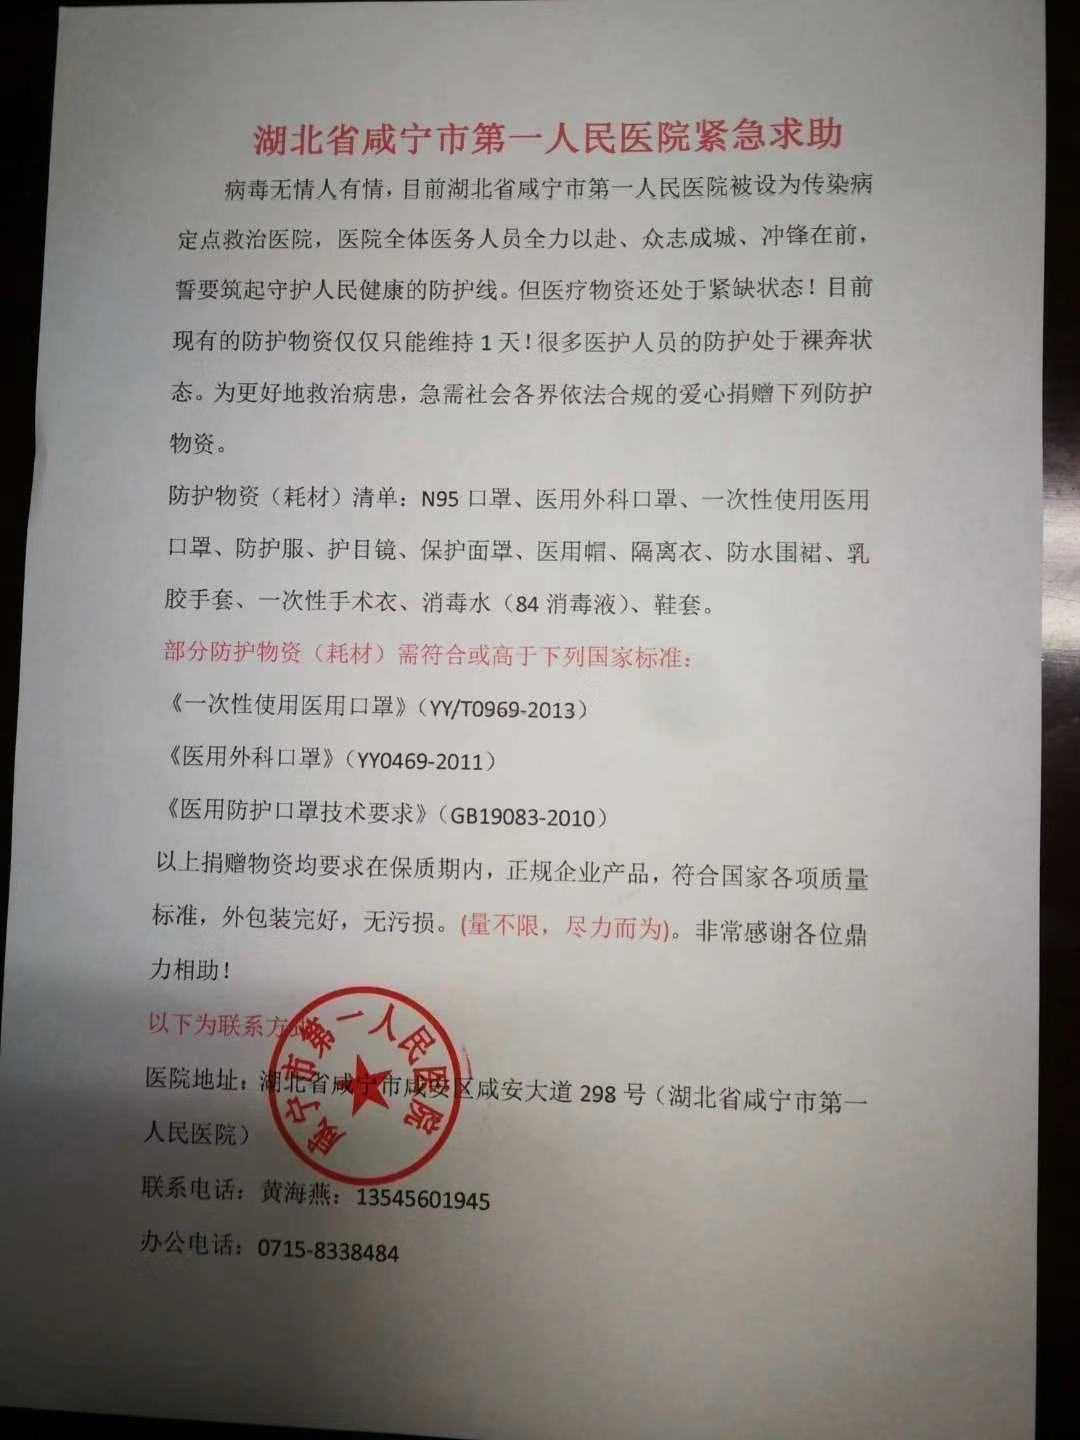 咸宁市第一人民医院的紧急求助及捐助需求单。 受访者供图